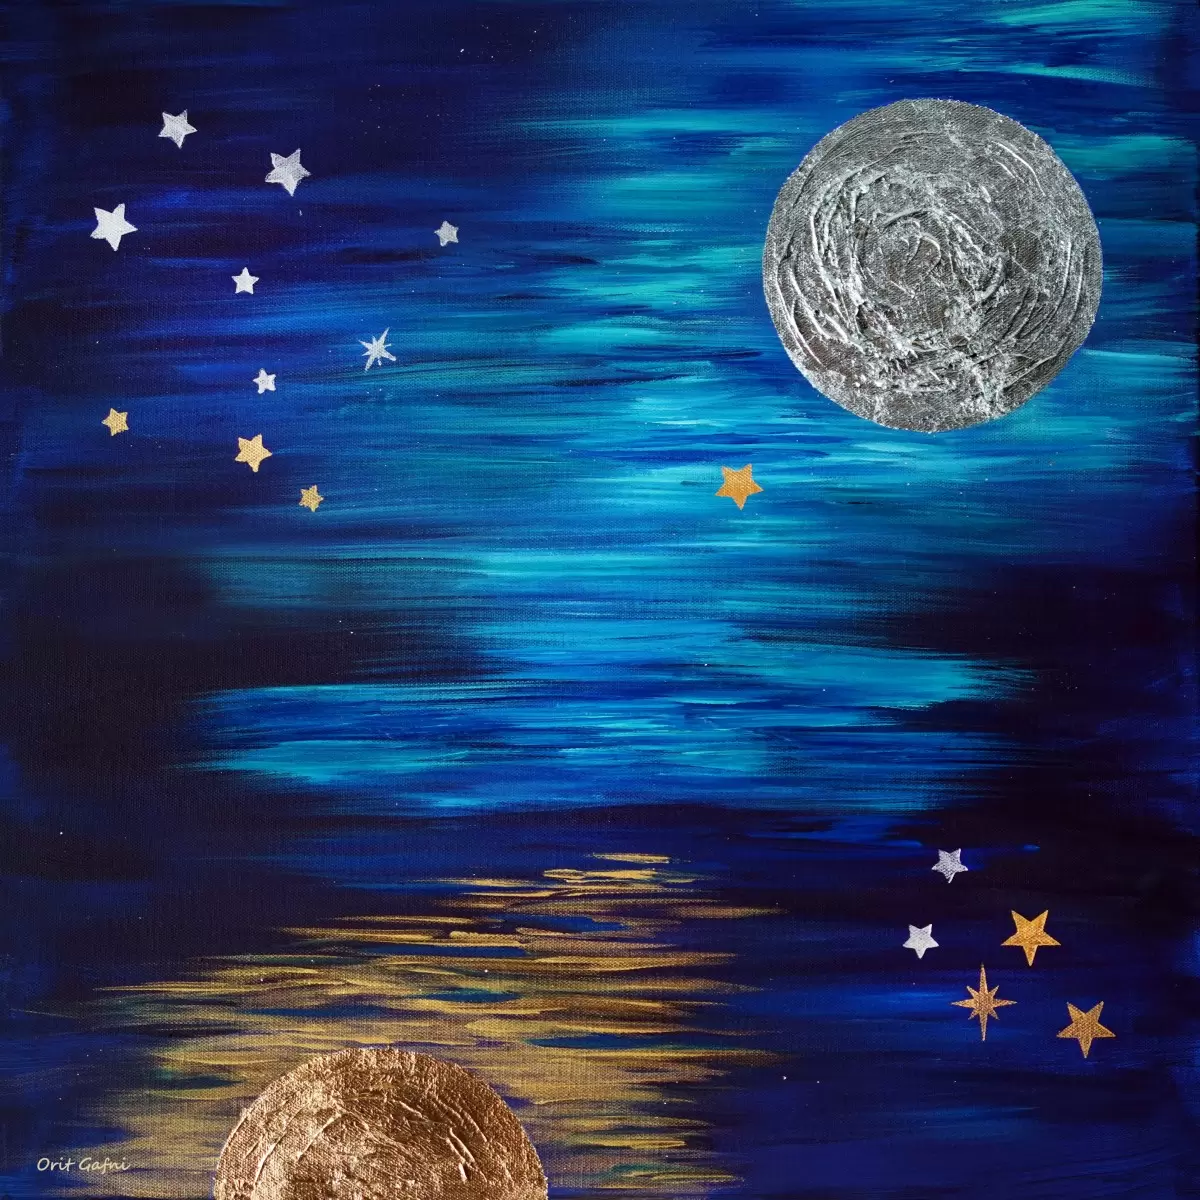 אגדת השמש והירח - אורית גפני - תמונות לחדרי ילדים נוף וטבע מופשט  - מק''ט: 464474